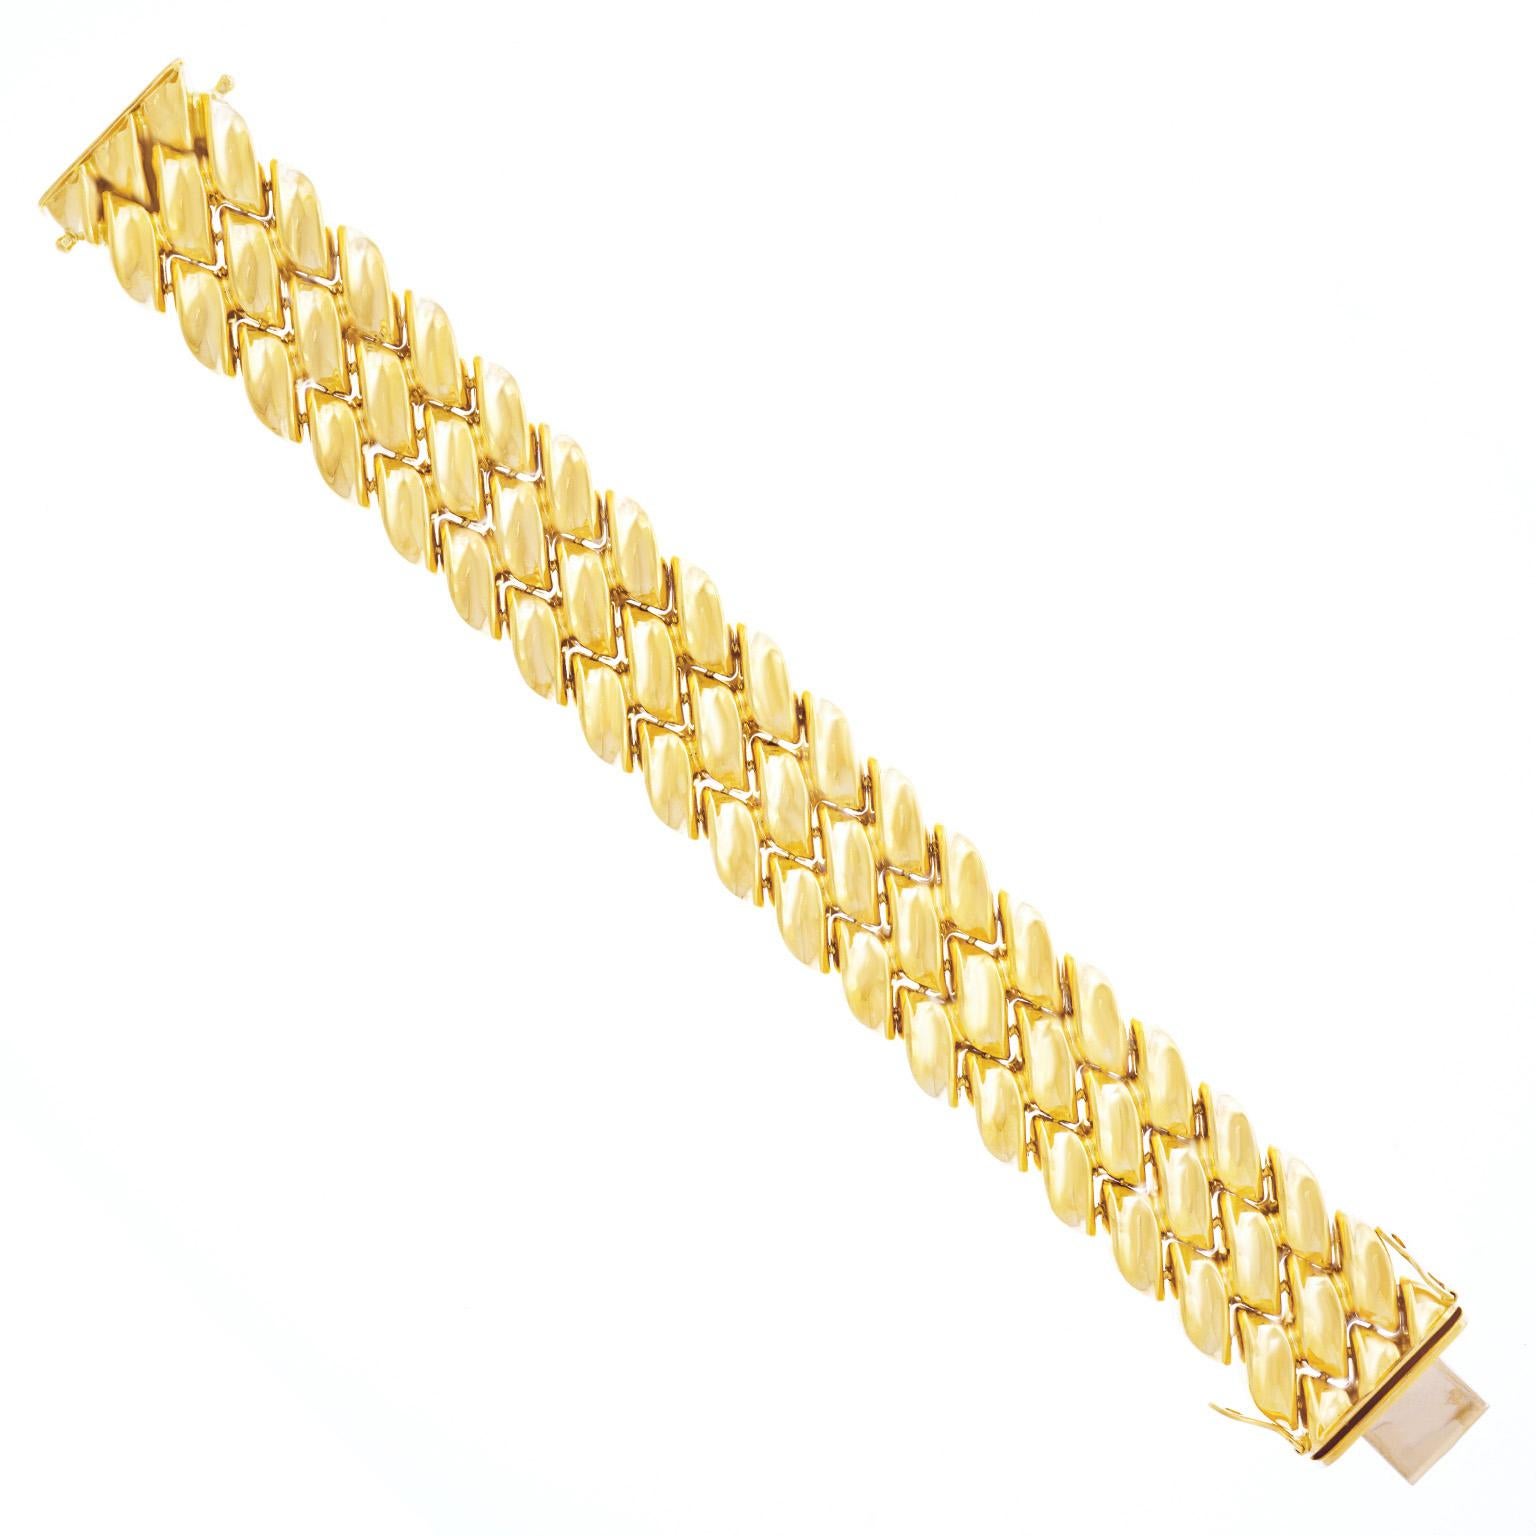 Tannler Gold Bracelet 18k c1960s Zurich Switzerland 2